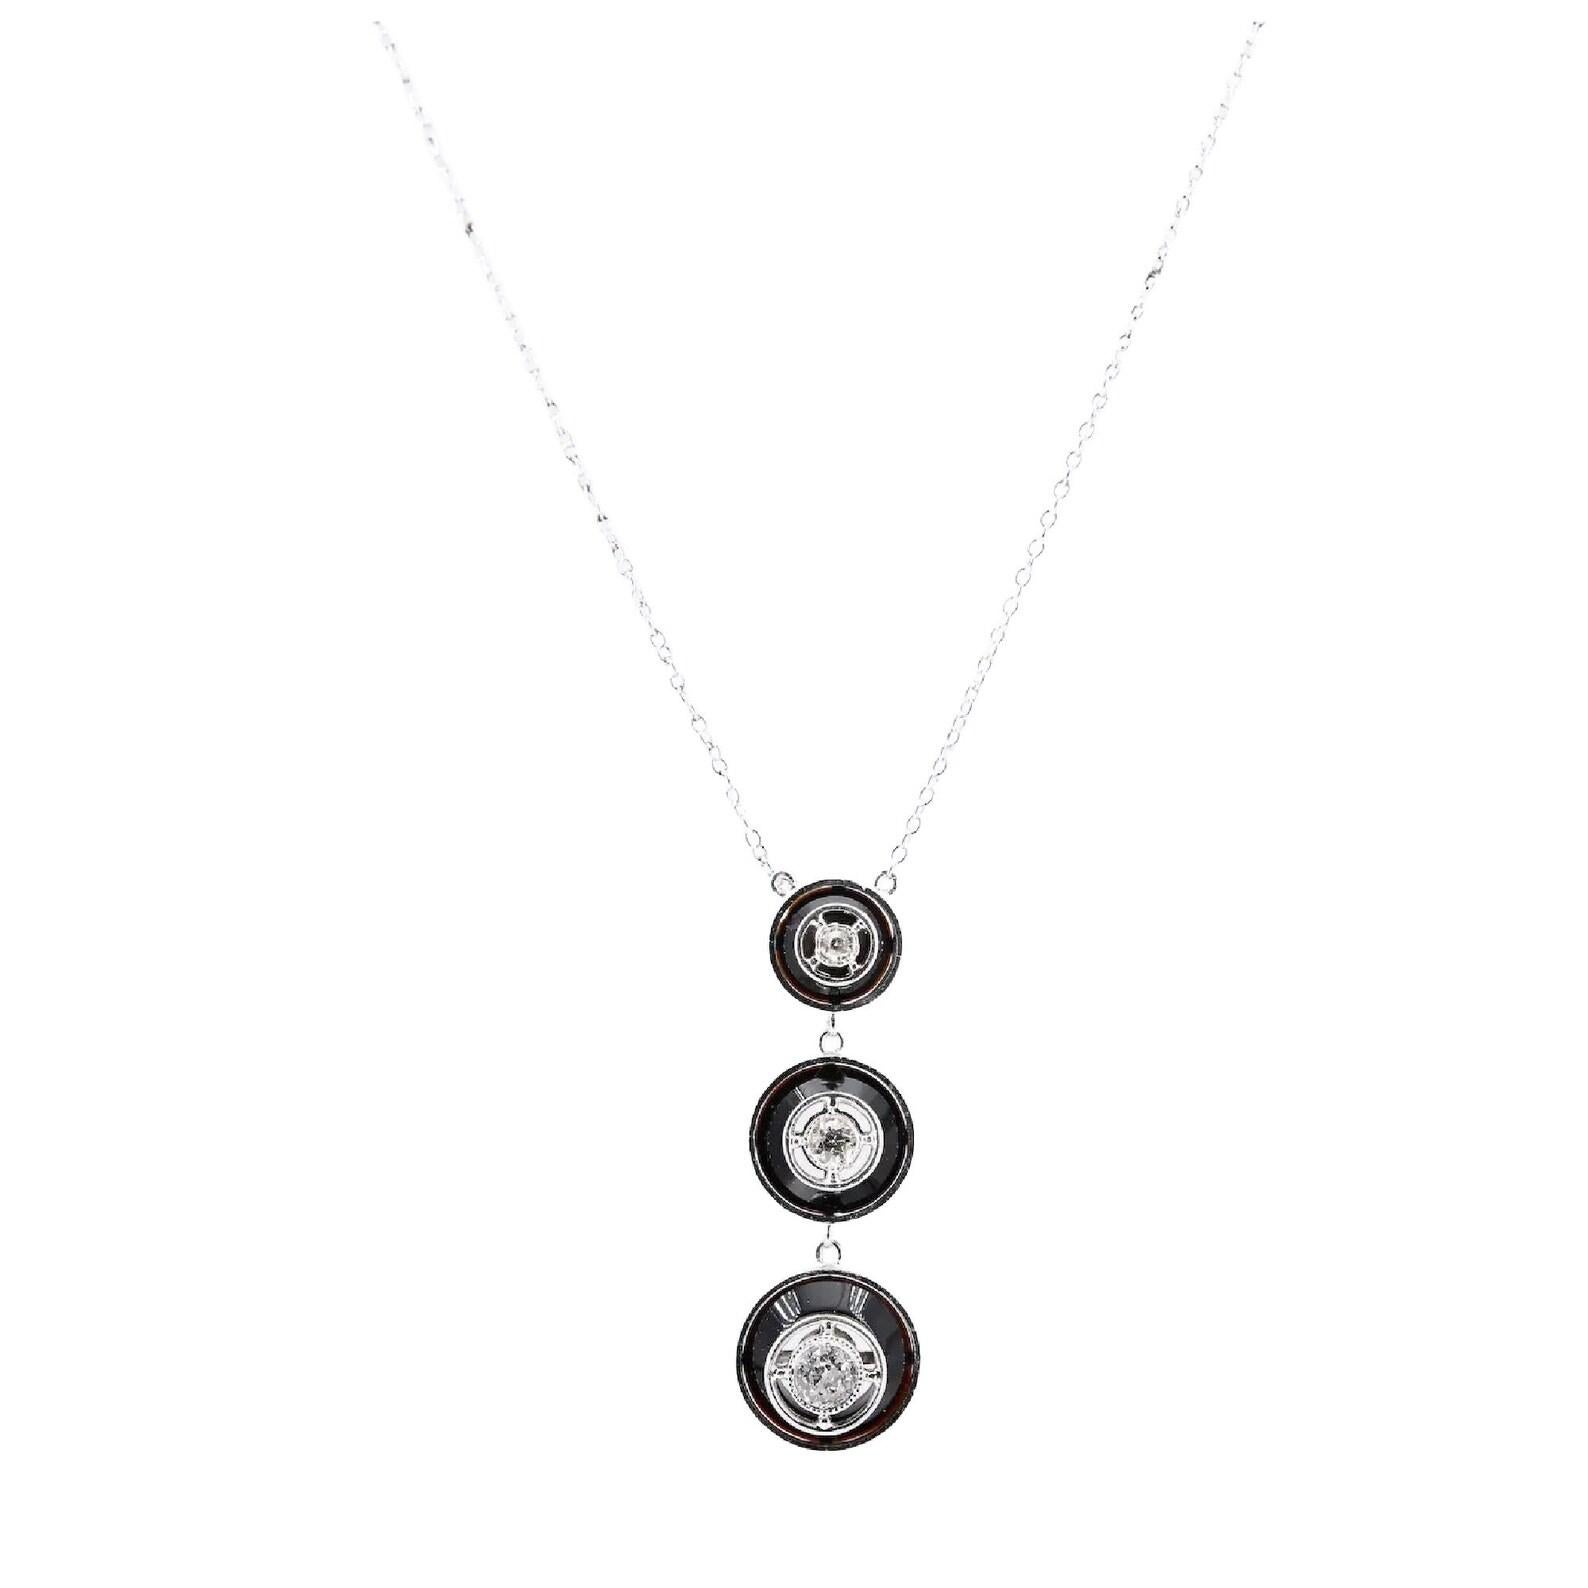 Eine Art-Deco-Halskette aus Platin mit Diamanten und Onyx im Stil einer Reise.

In der Mitte befinden sich drei abgestufte Diamanten in einer Platinfassung mit Miligrain-Perlen vor einem Hintergrund aus poliertem schwarzem Onyx.

Die Diamanten haben